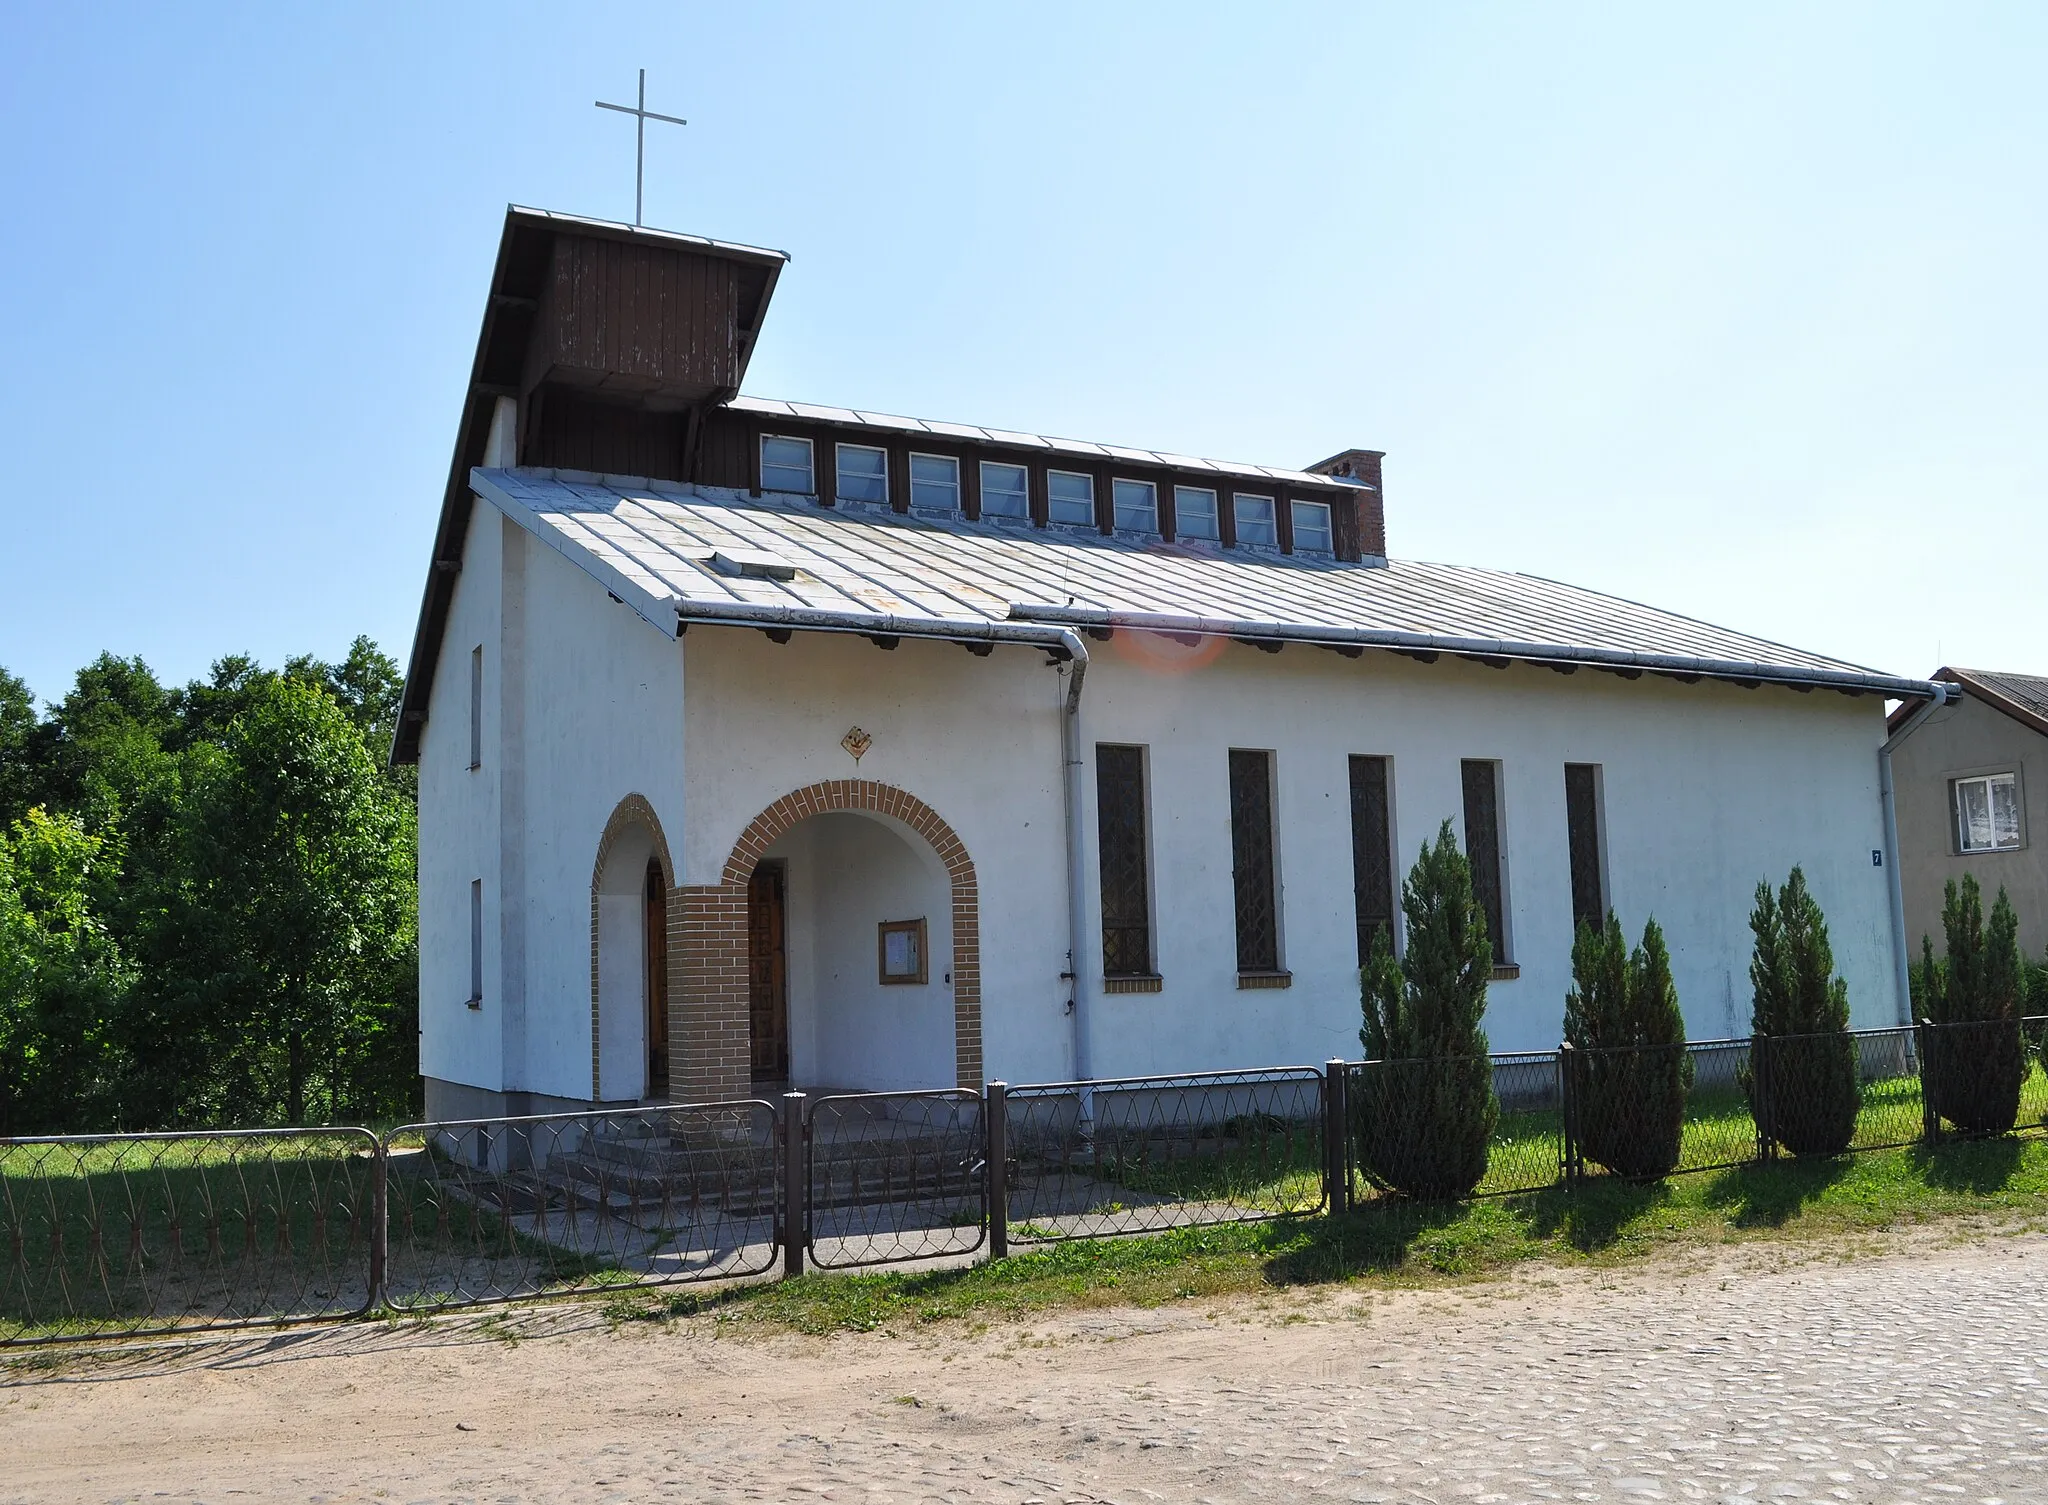 Photo showing: Our Lady of Częstochowa church in Bychowo